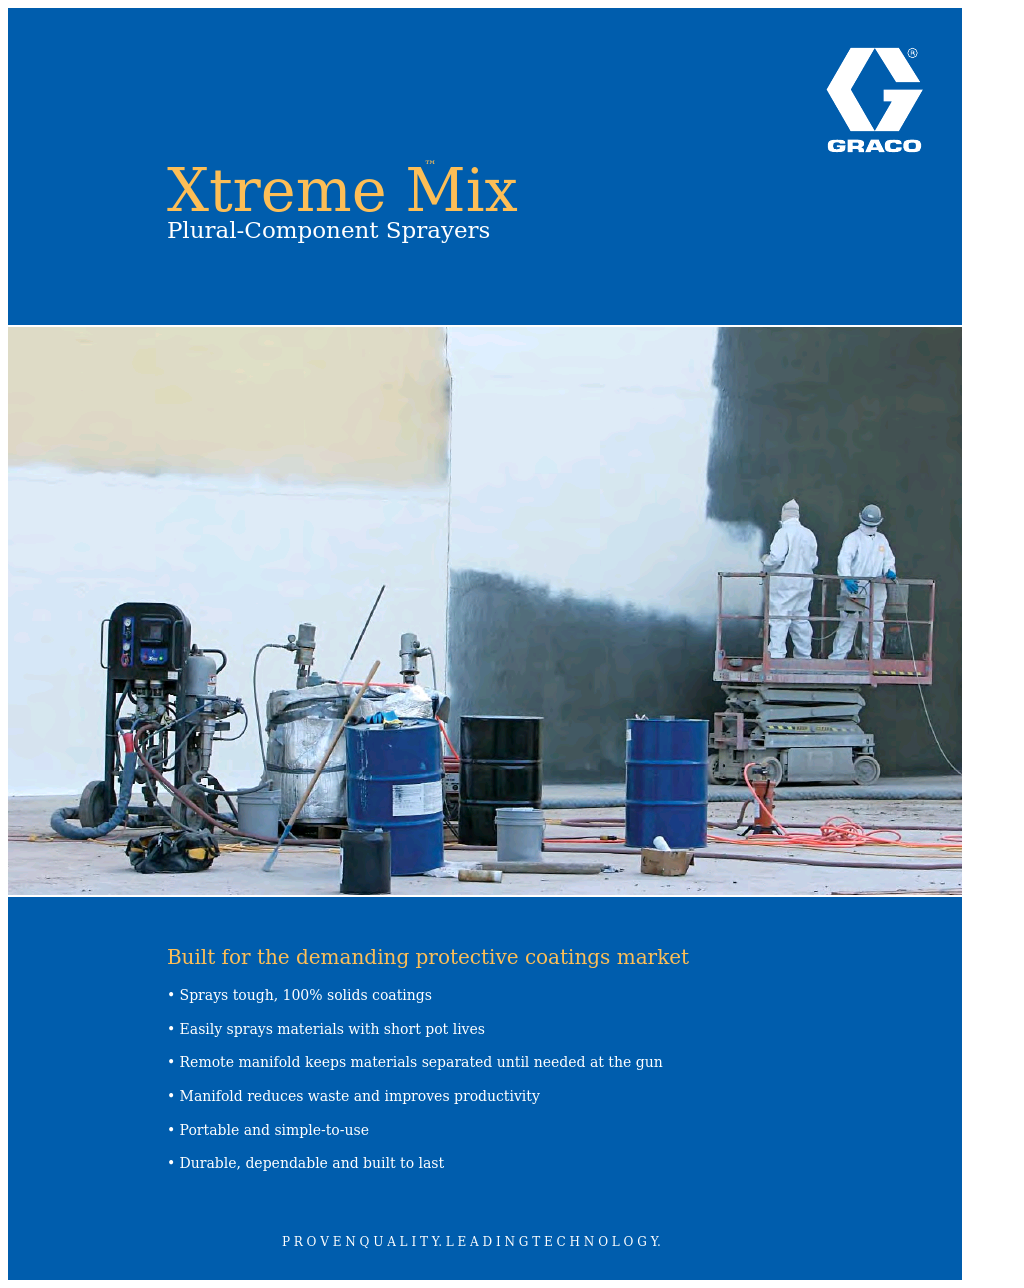 Xtreme Mix XTR500